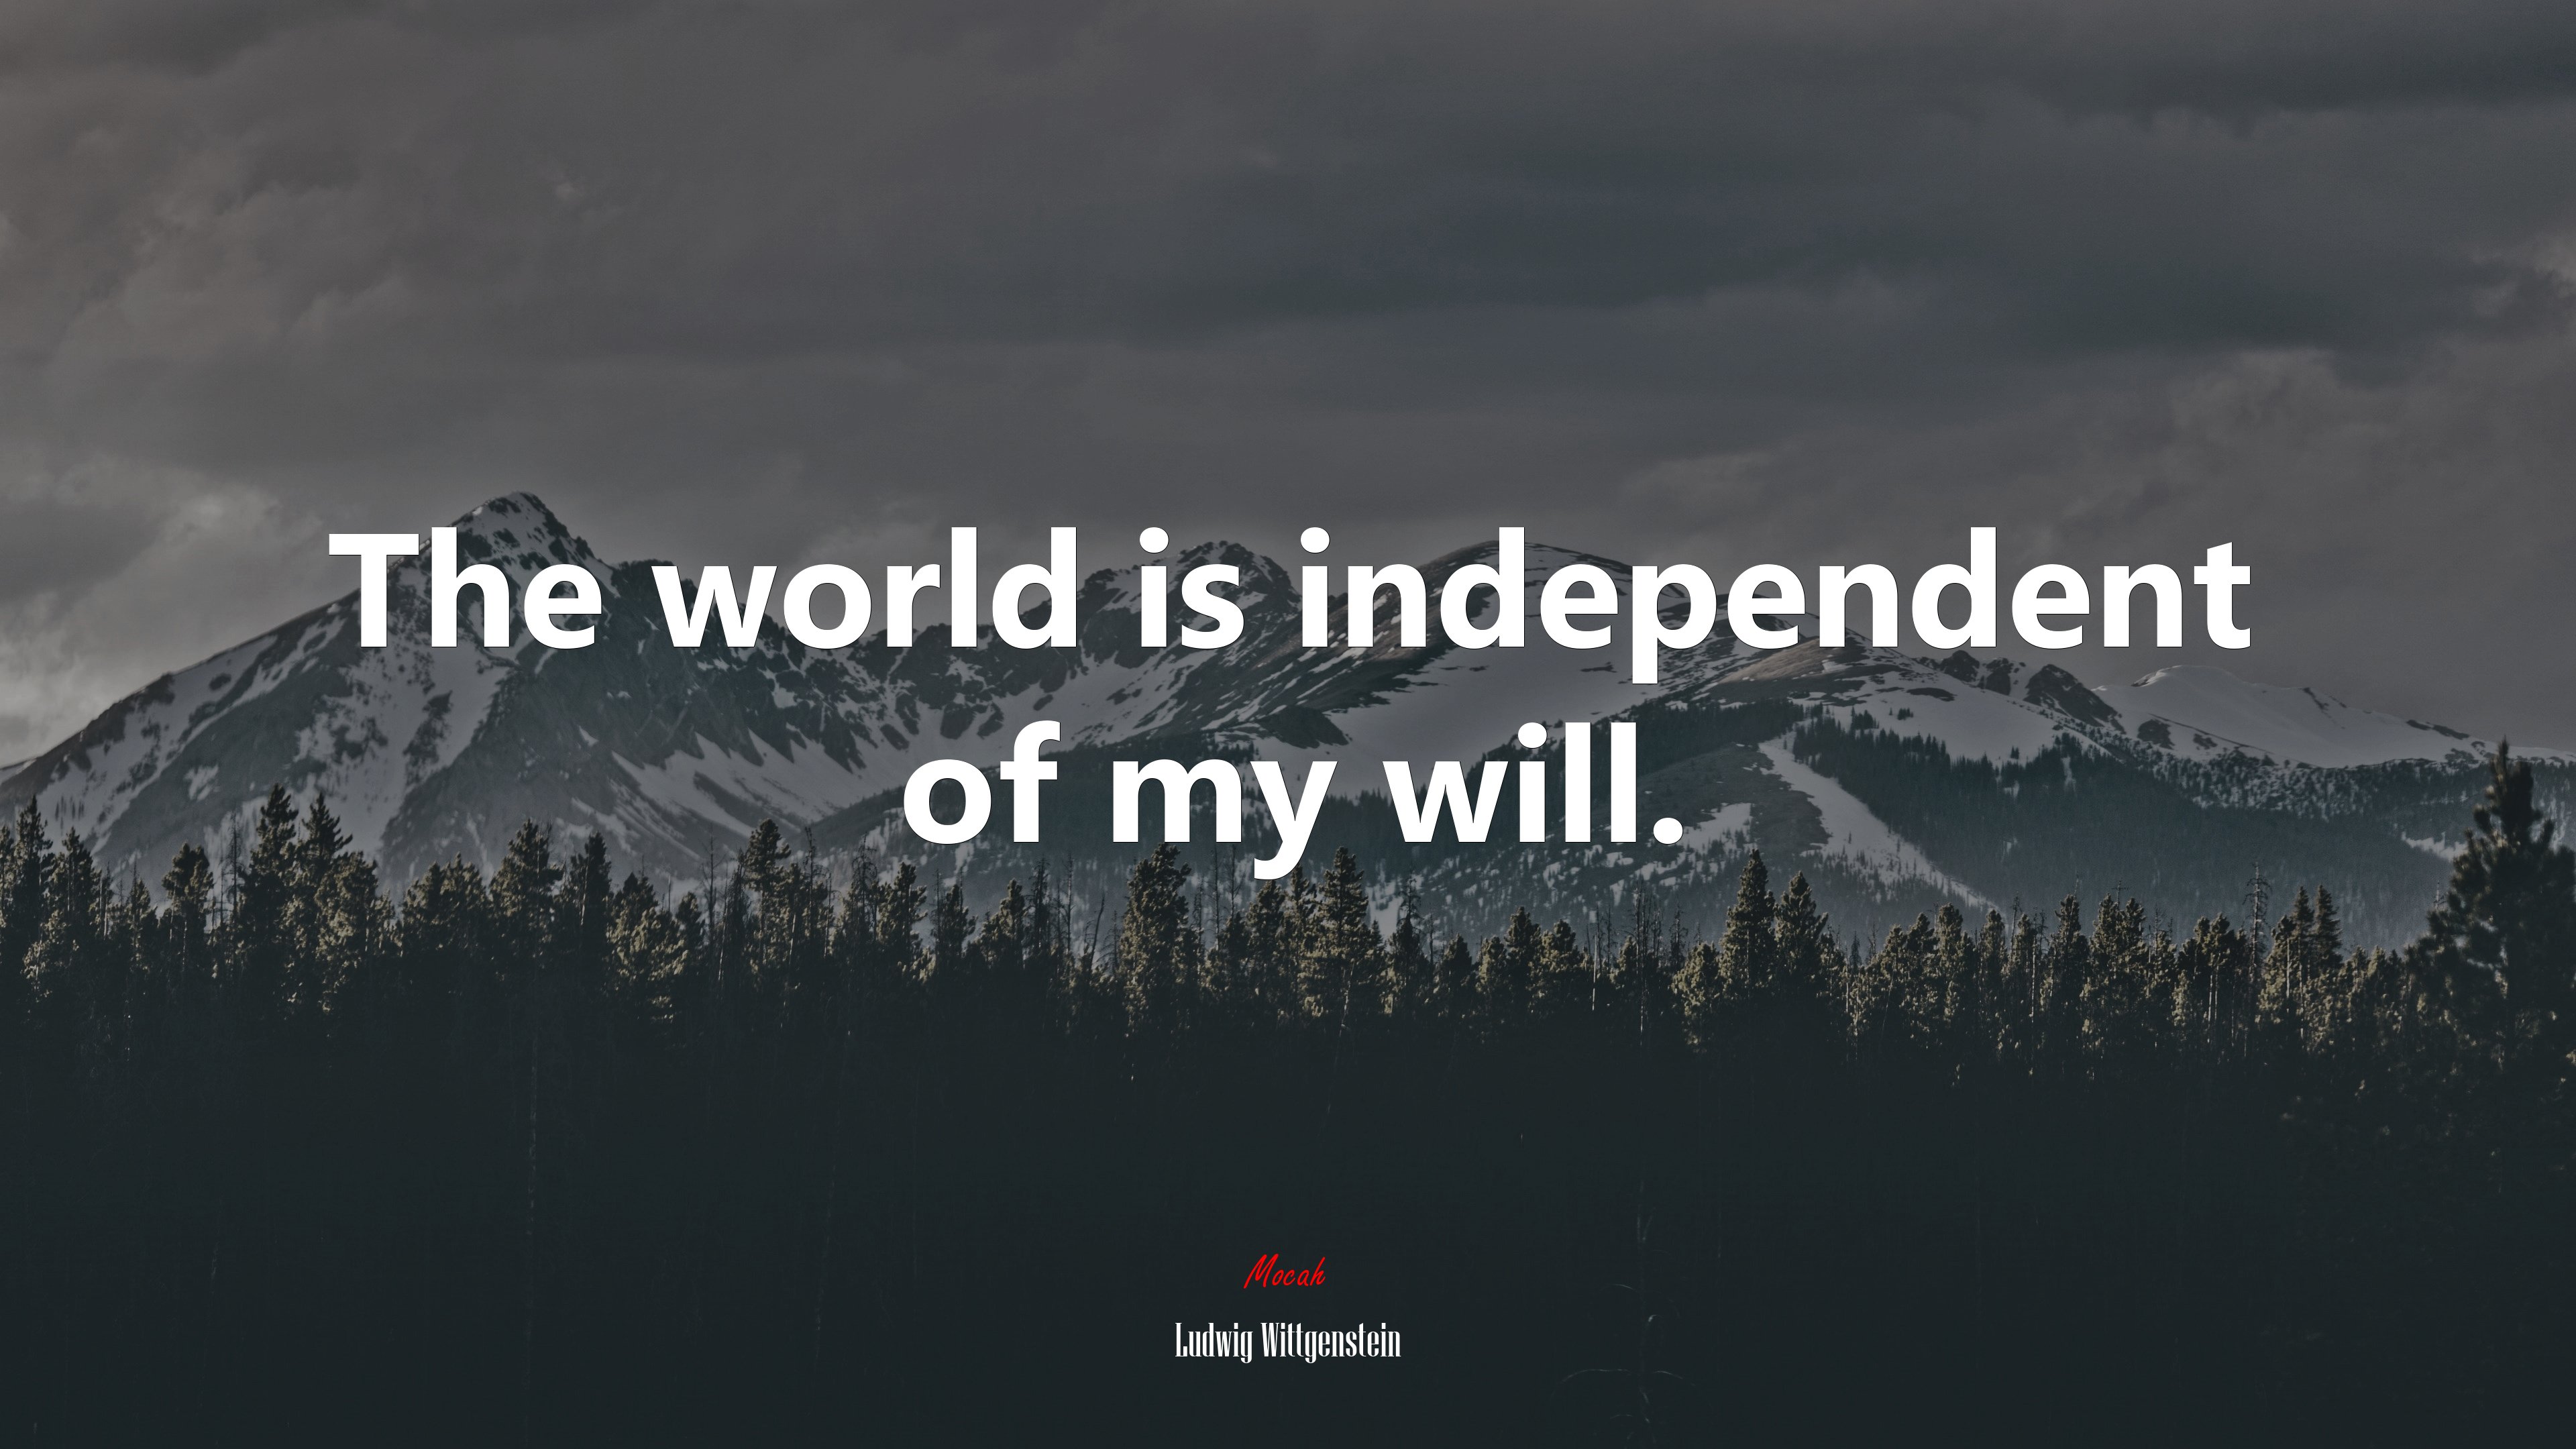 I Am My World Ludwig Wittgenstein Quote 4k Wallpaper